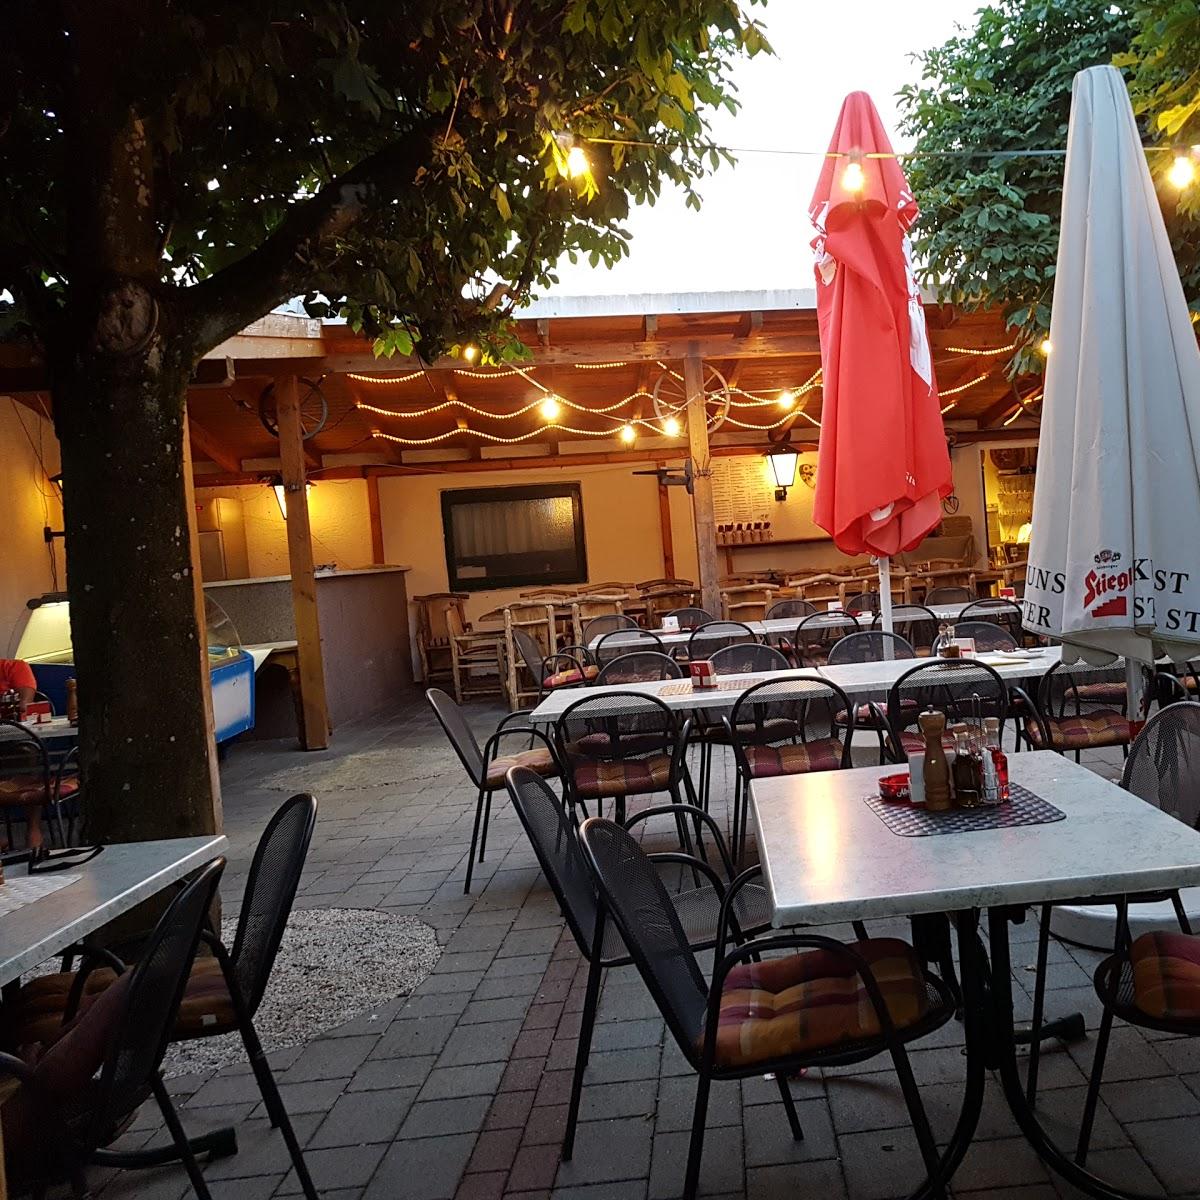 Restaurant "Zum Italiener" in Attnang-Puchheim